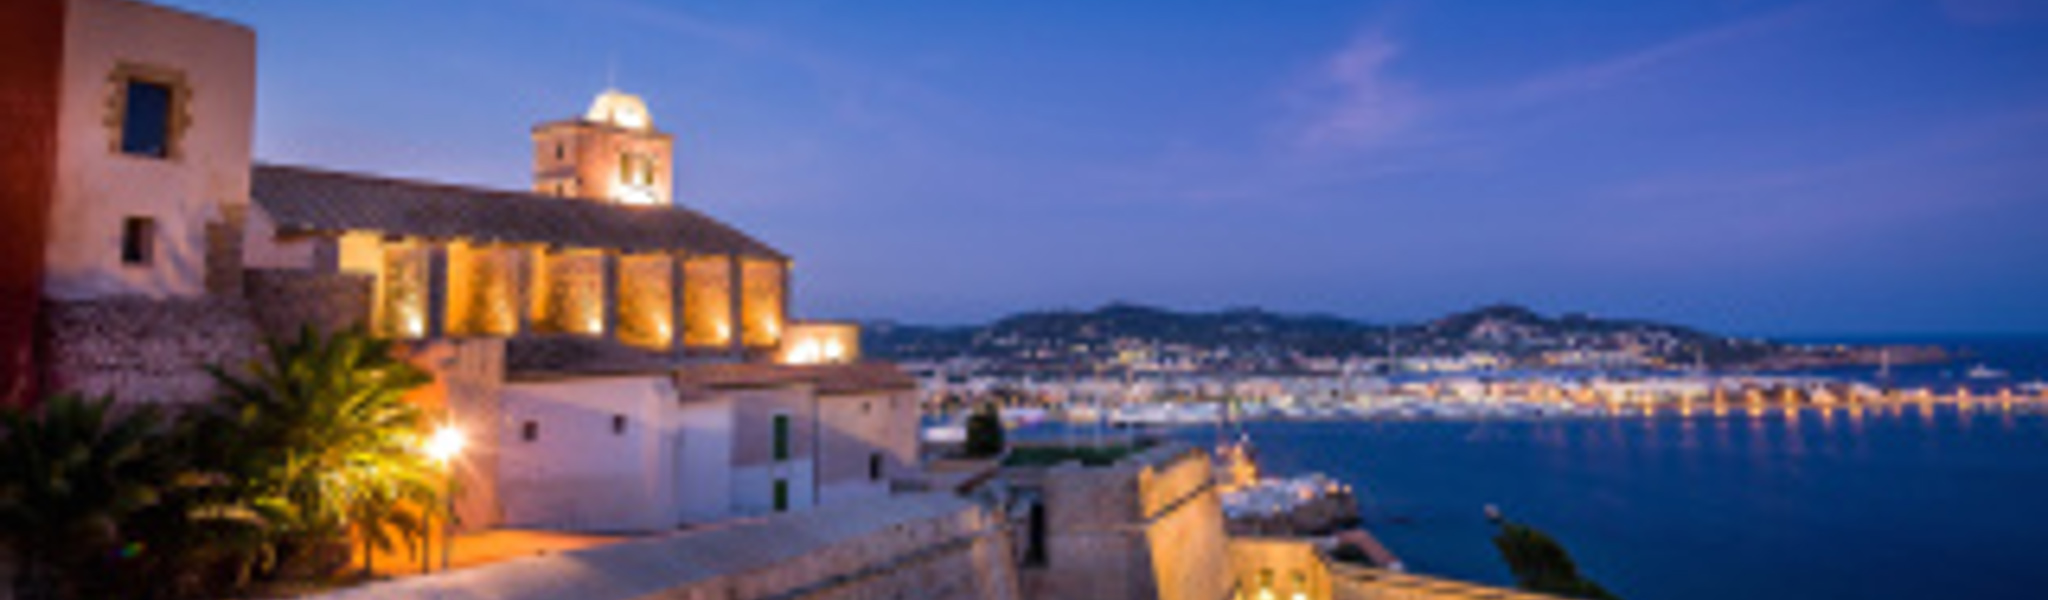 10 Gründe, warum wir Ibiza lieben 